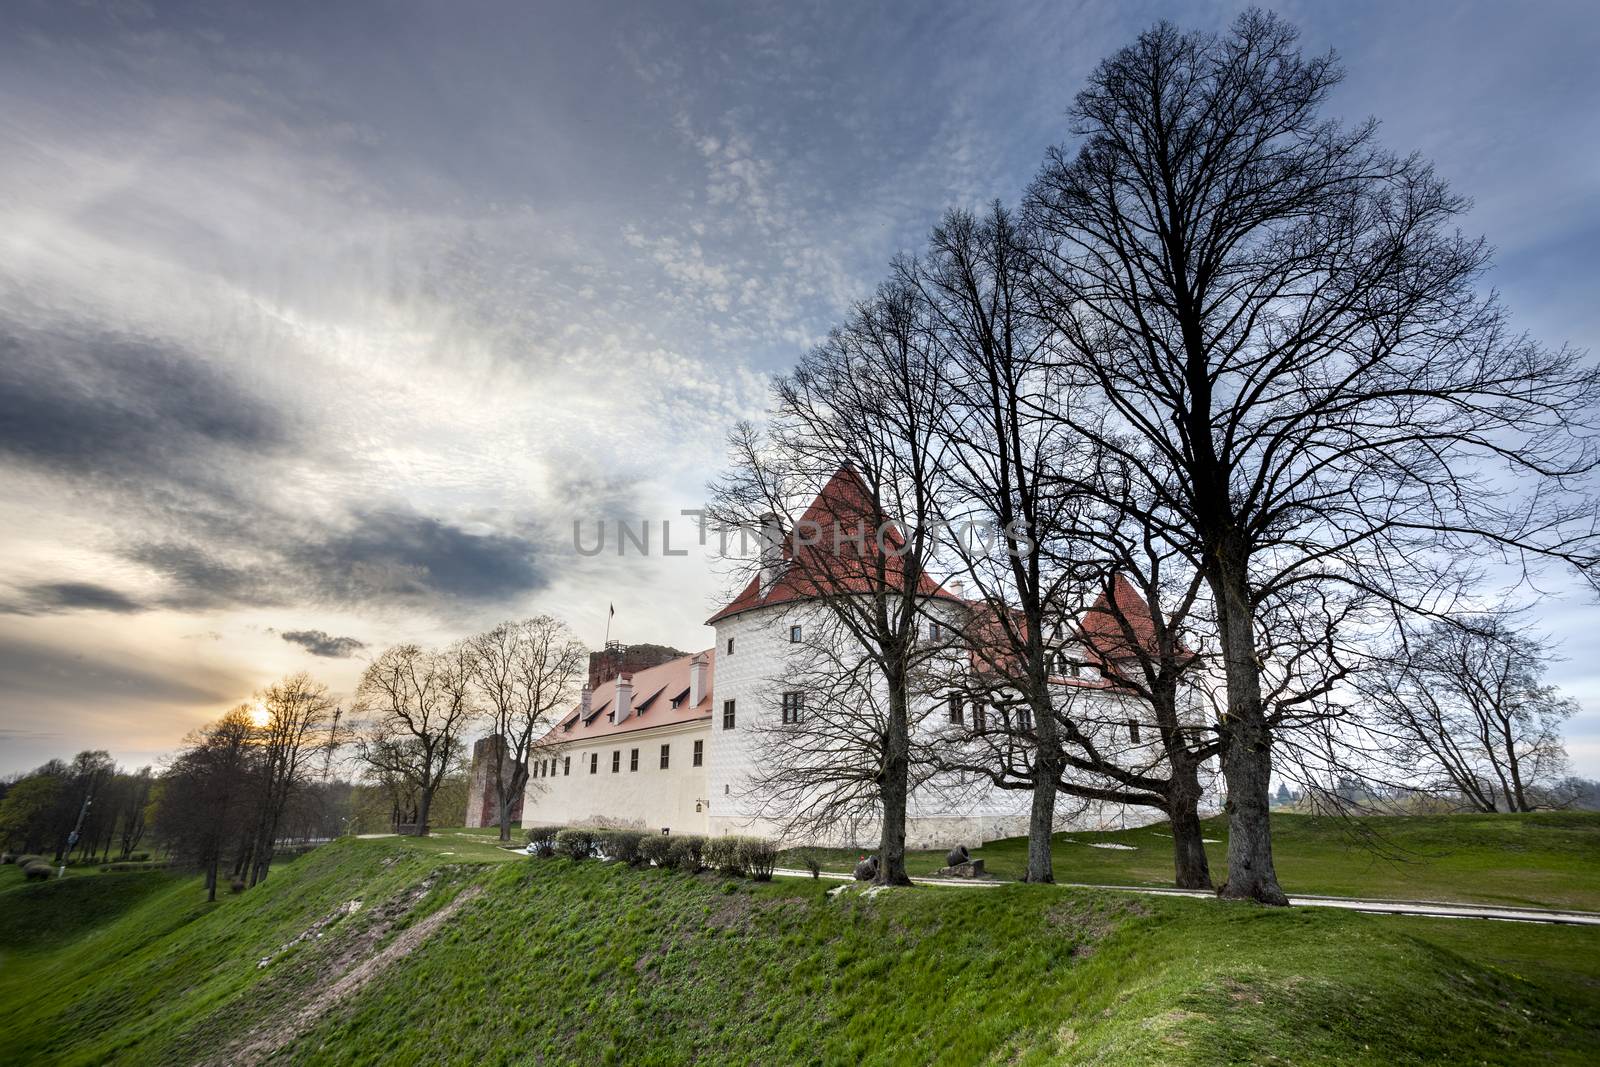 Bauska castle restored part during sunset time. HDR image